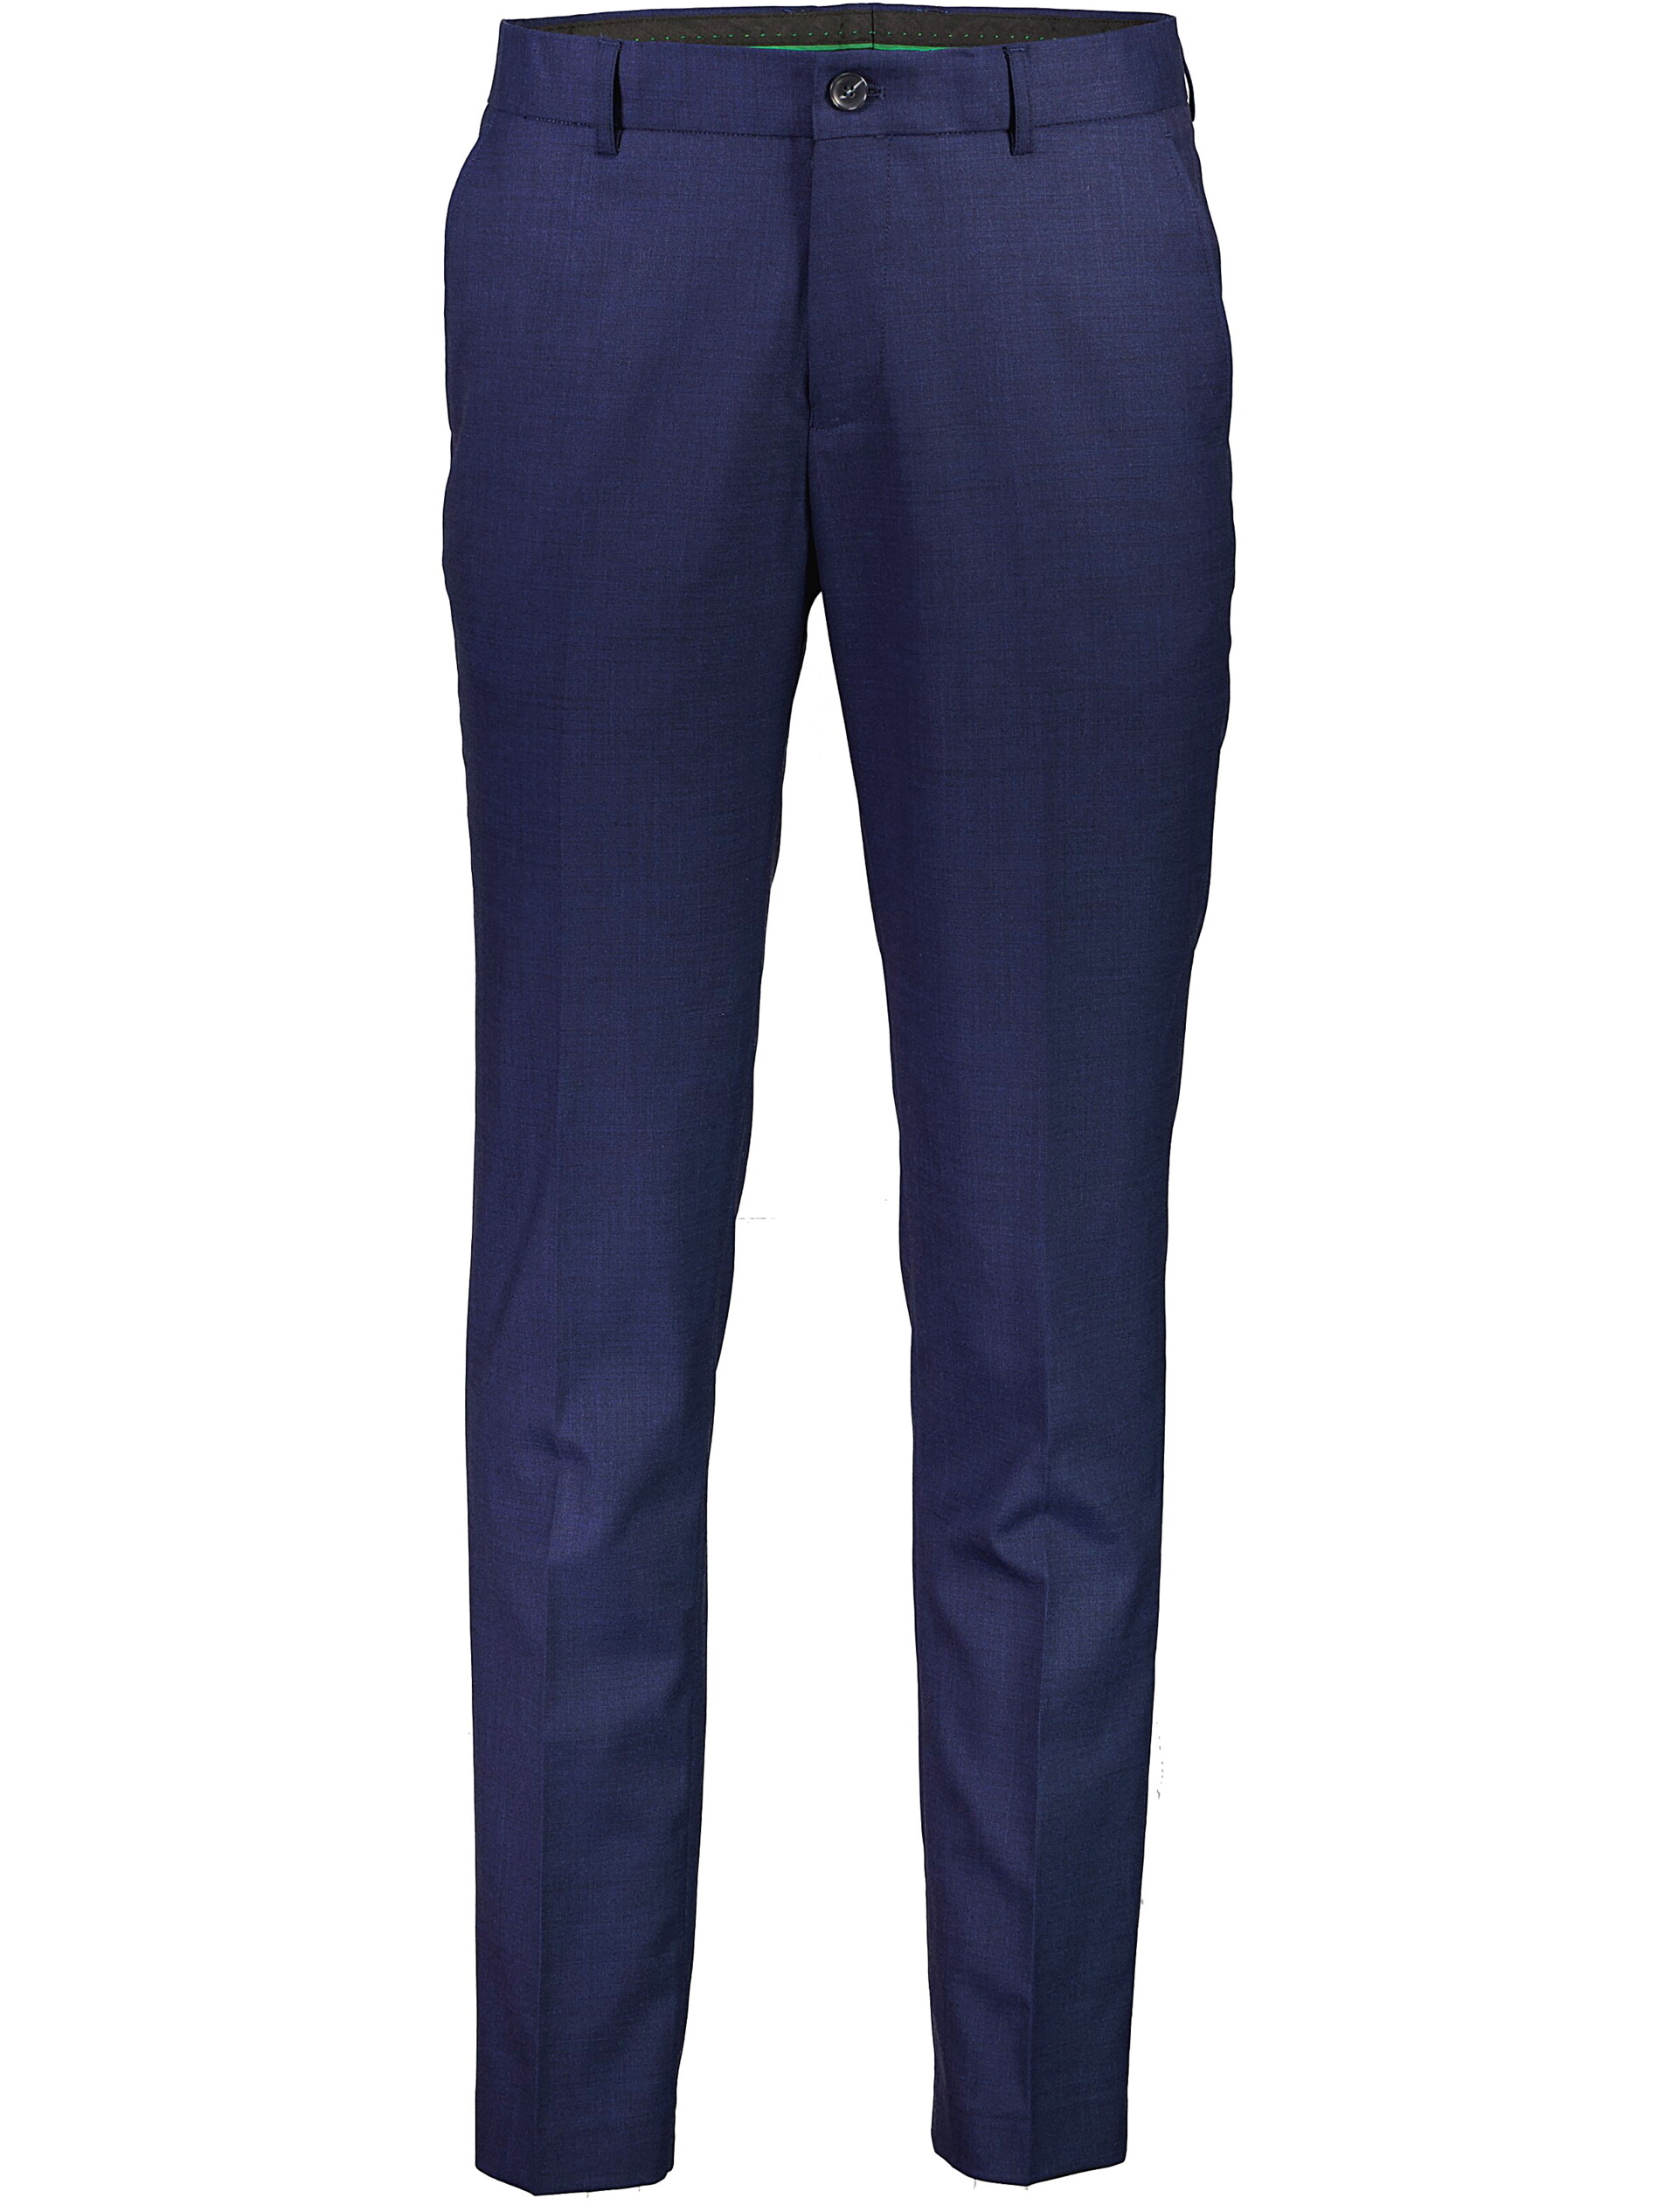 Lindbergh Suit pants blue / dk blue